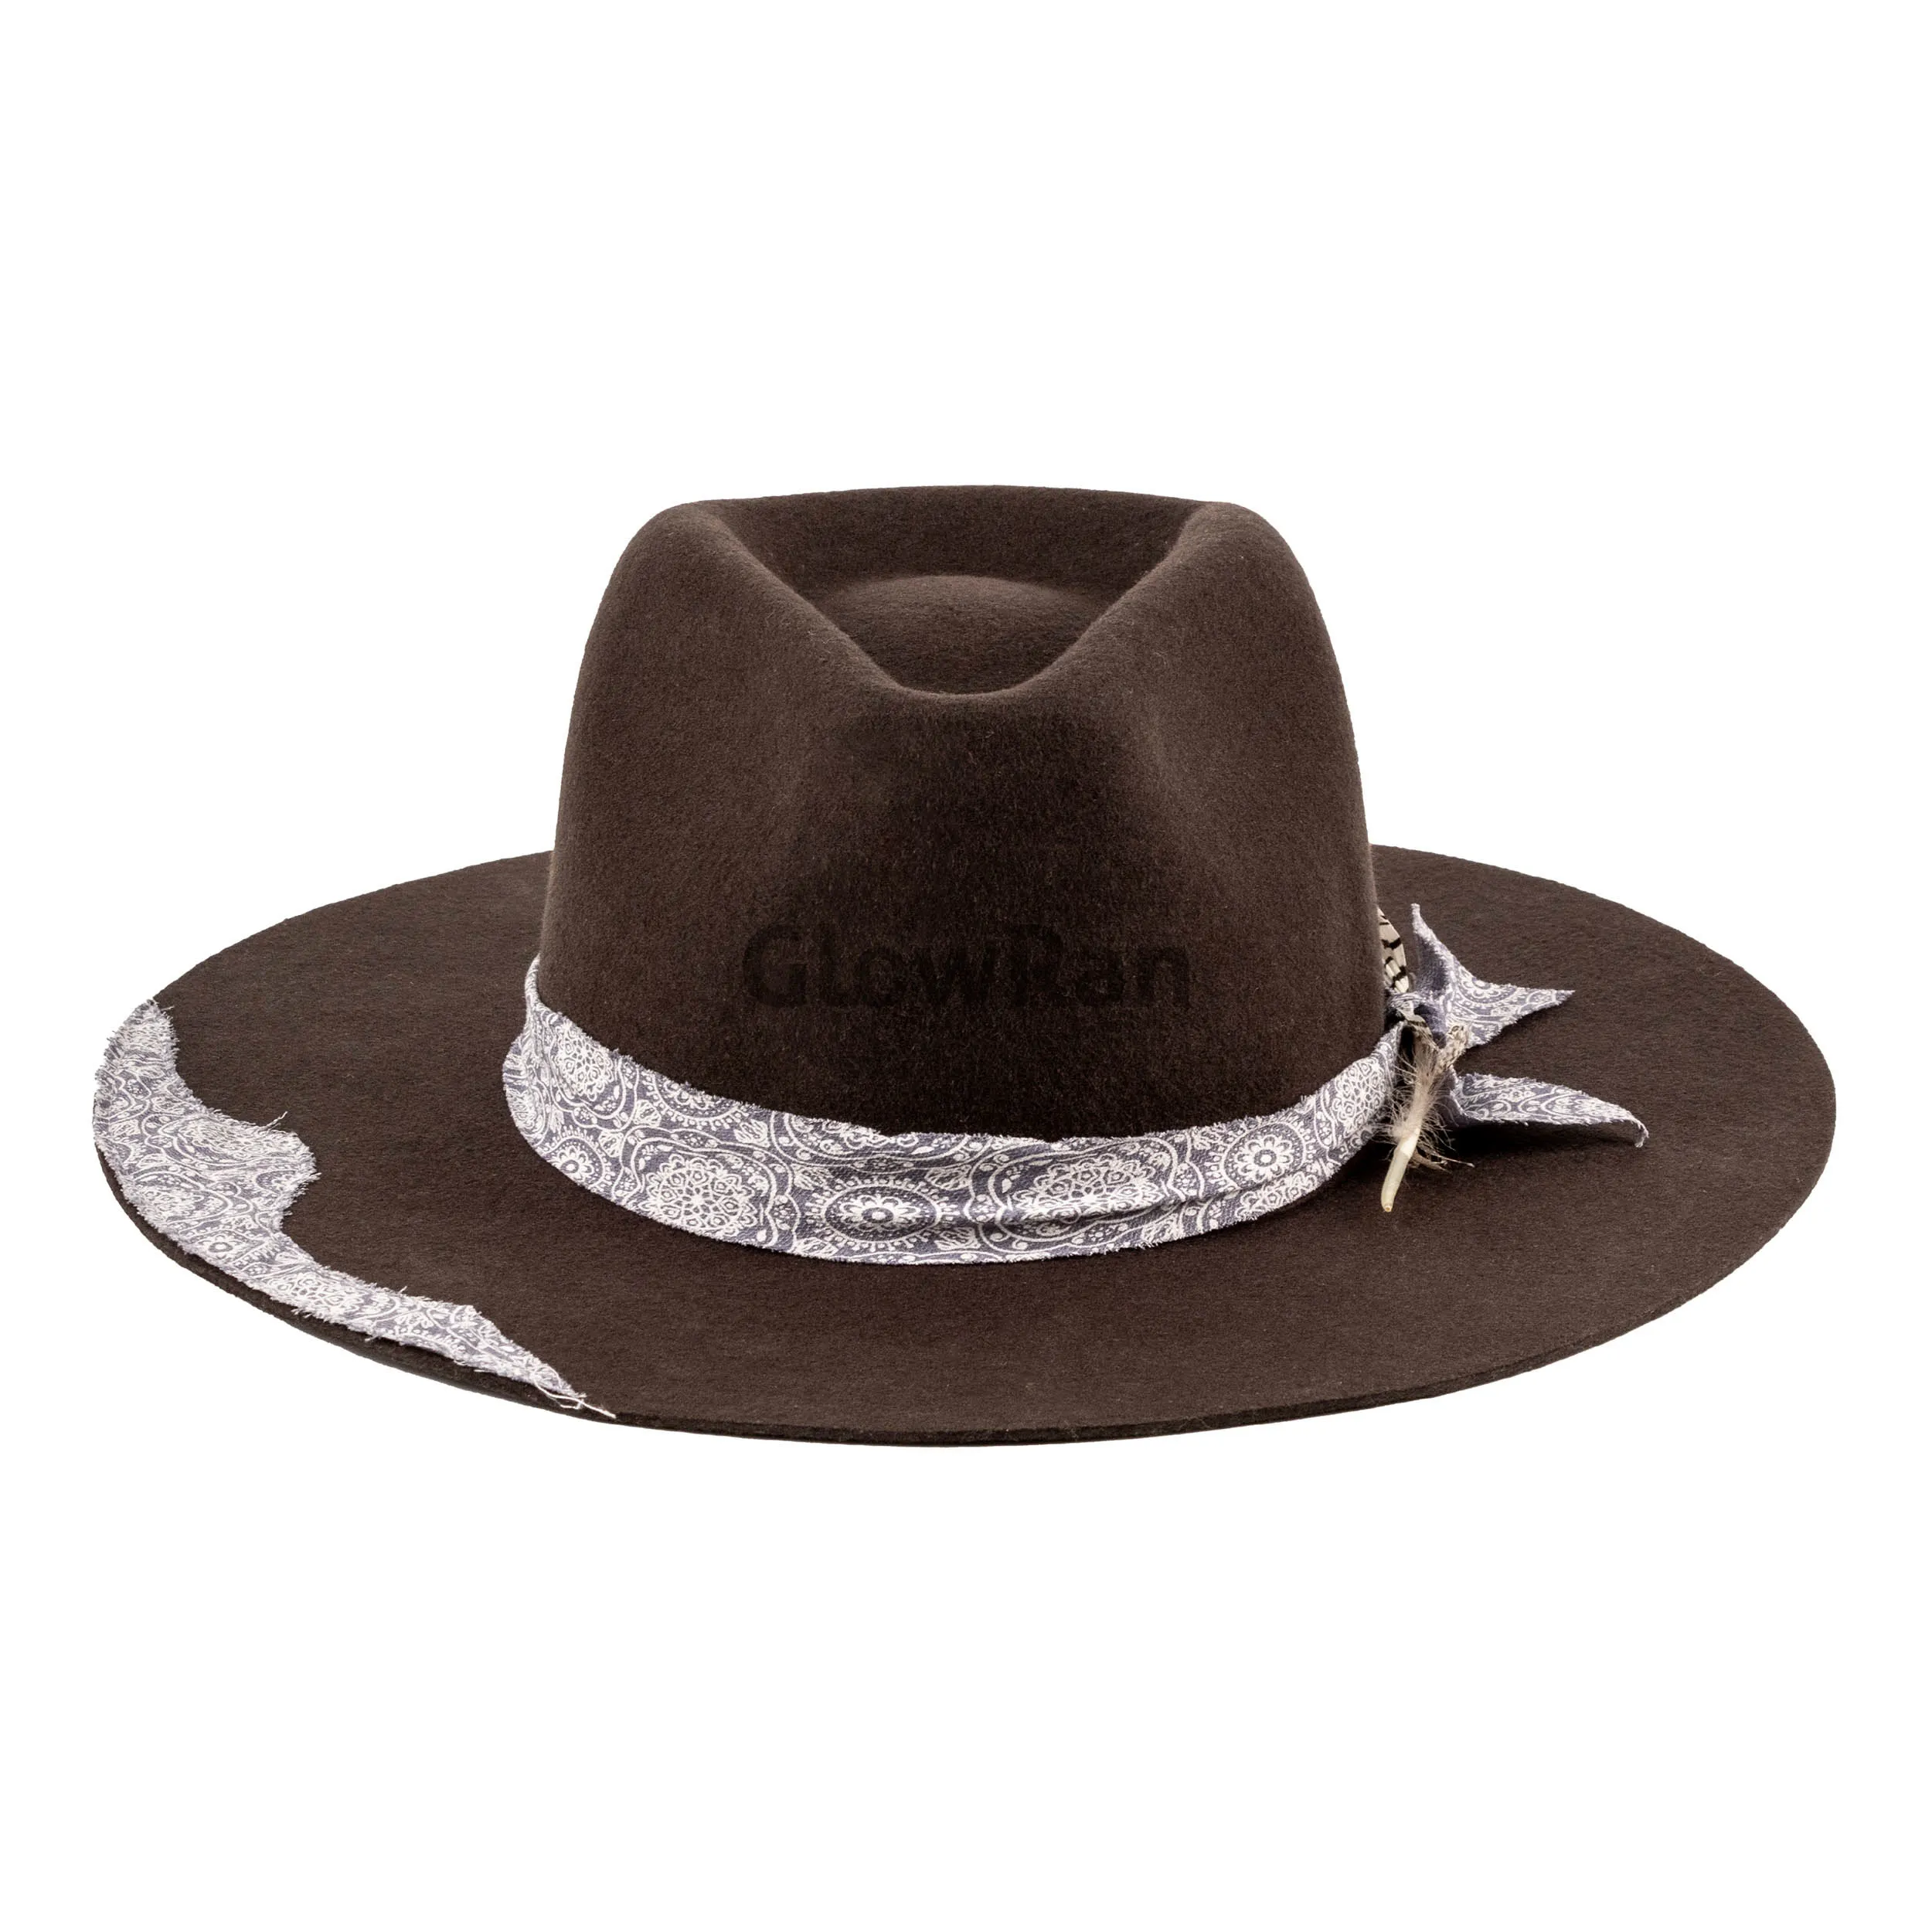 قبعة فيدورا صوف أسترالية فاخرة عالية الجودة وذات حافة واسعة من GlowRan مع عصابة